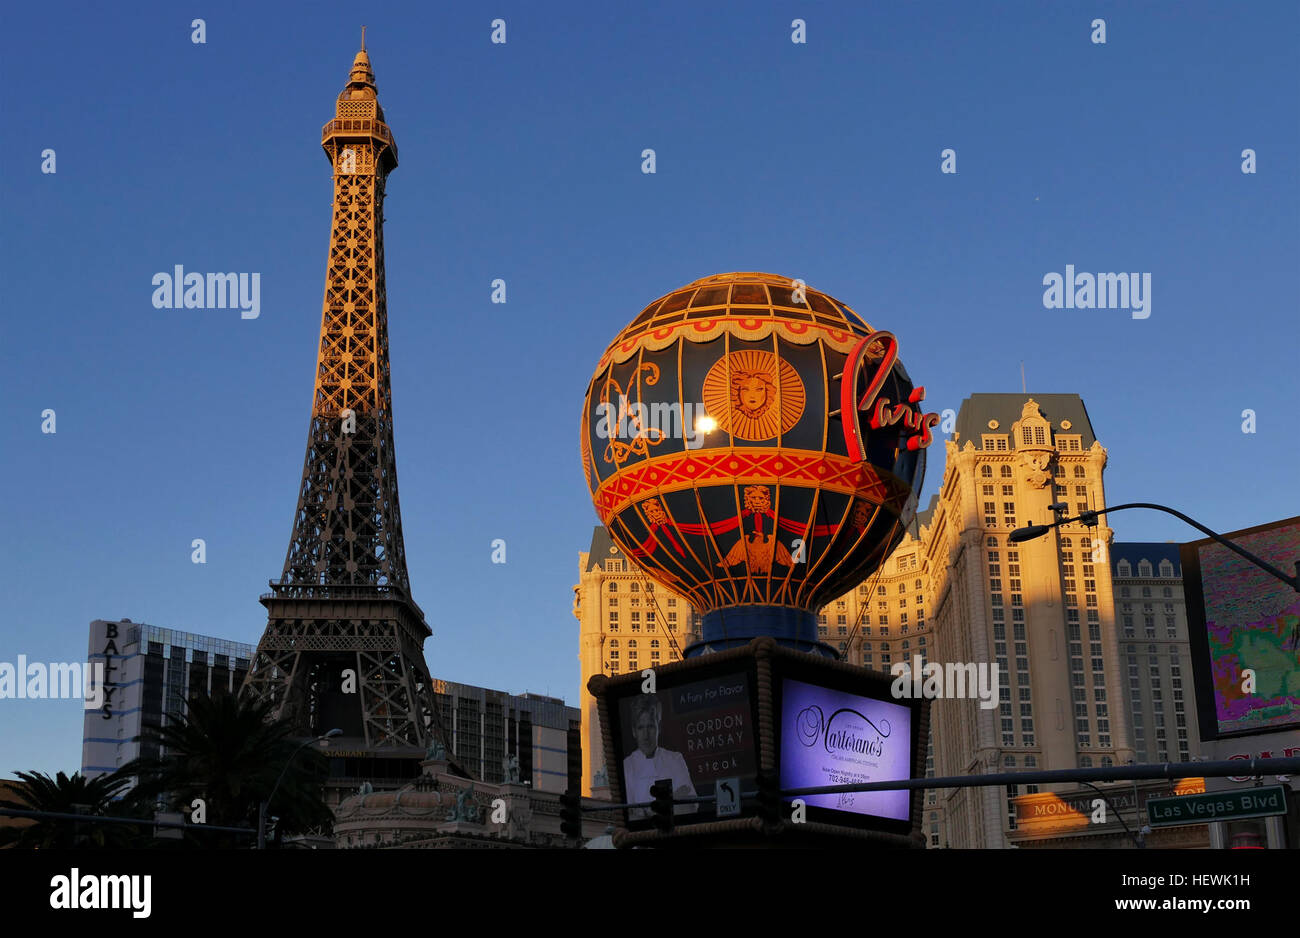 Questo francese-themed casino hotel con un half-size Torre Eiffel è attraverso la striscia dal Bellagio e a 9 minuti a piedi da Las Vegas Monorail Station. Foto Stock